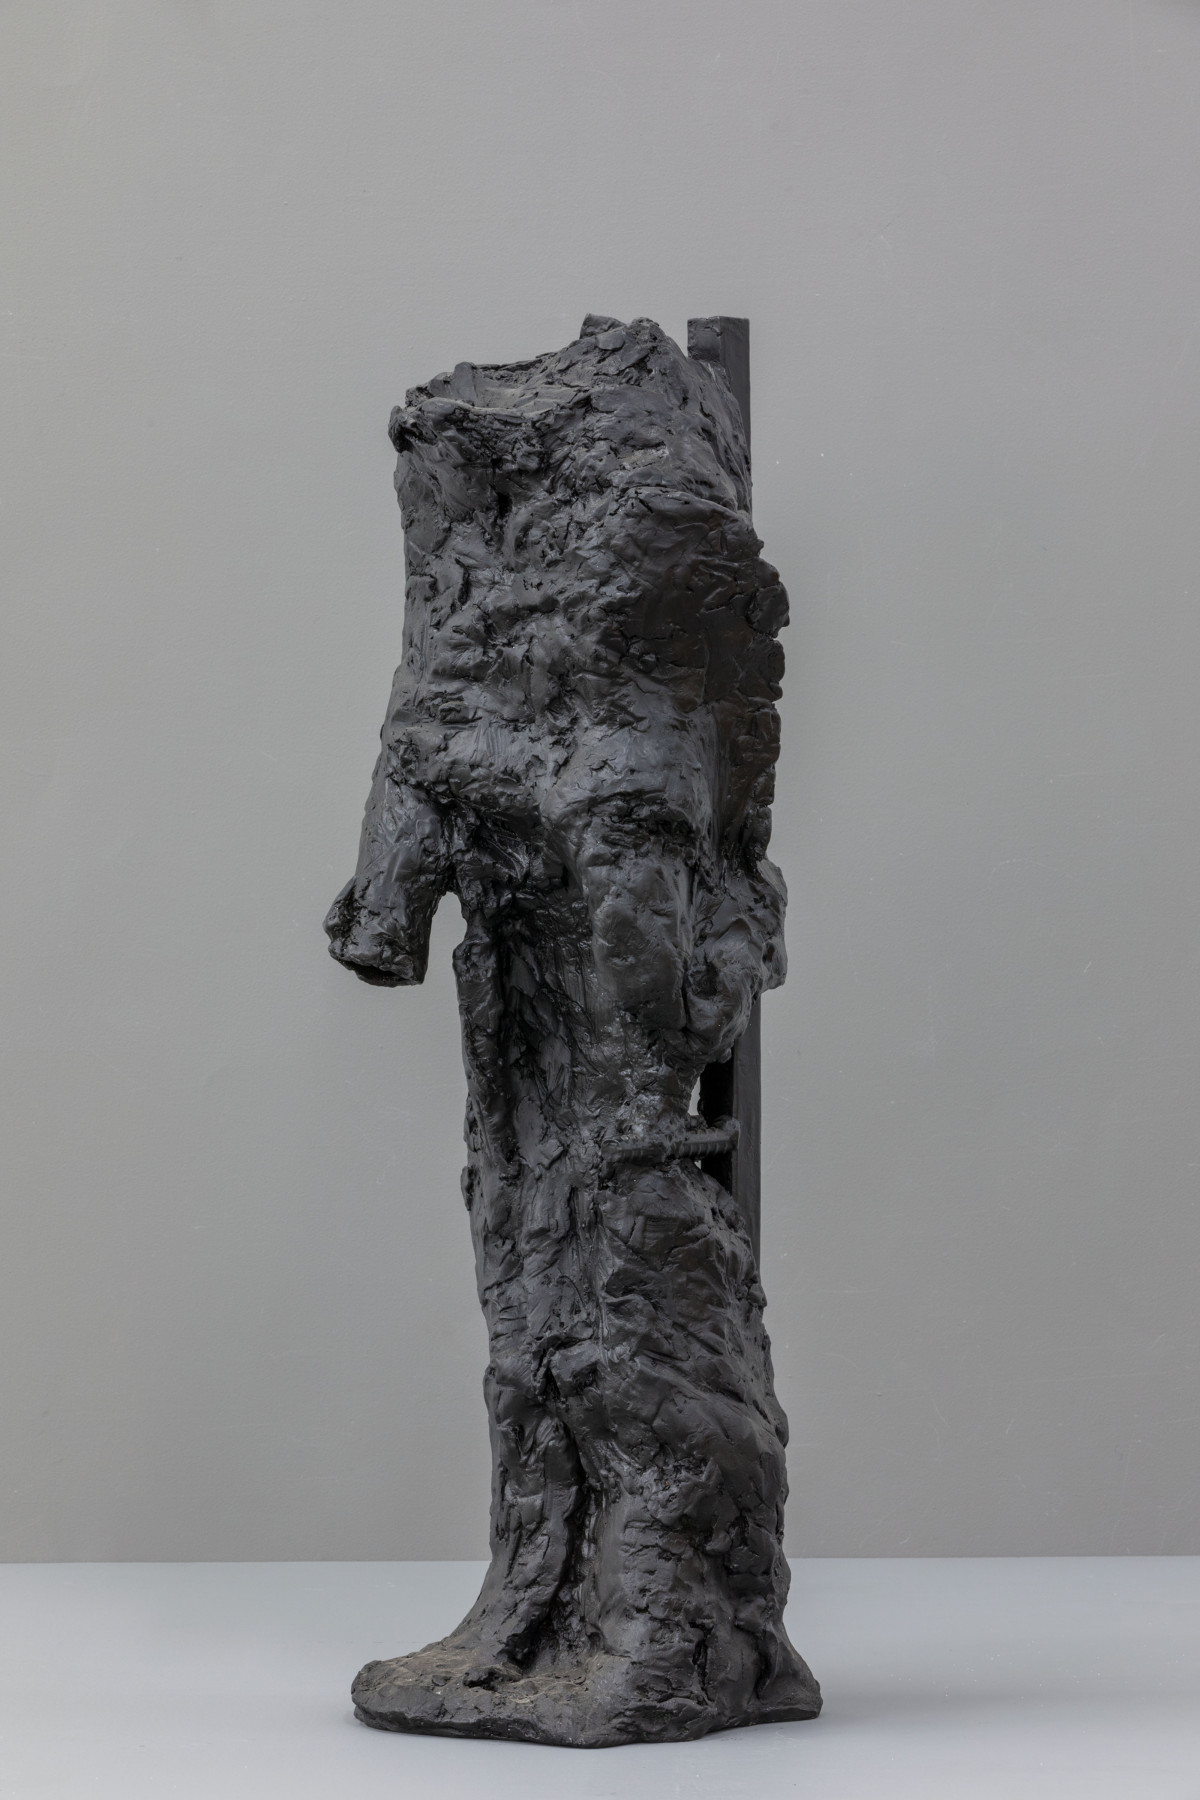 Pedro Cabrita Reis, ‘Adam’, 2019, Bronze